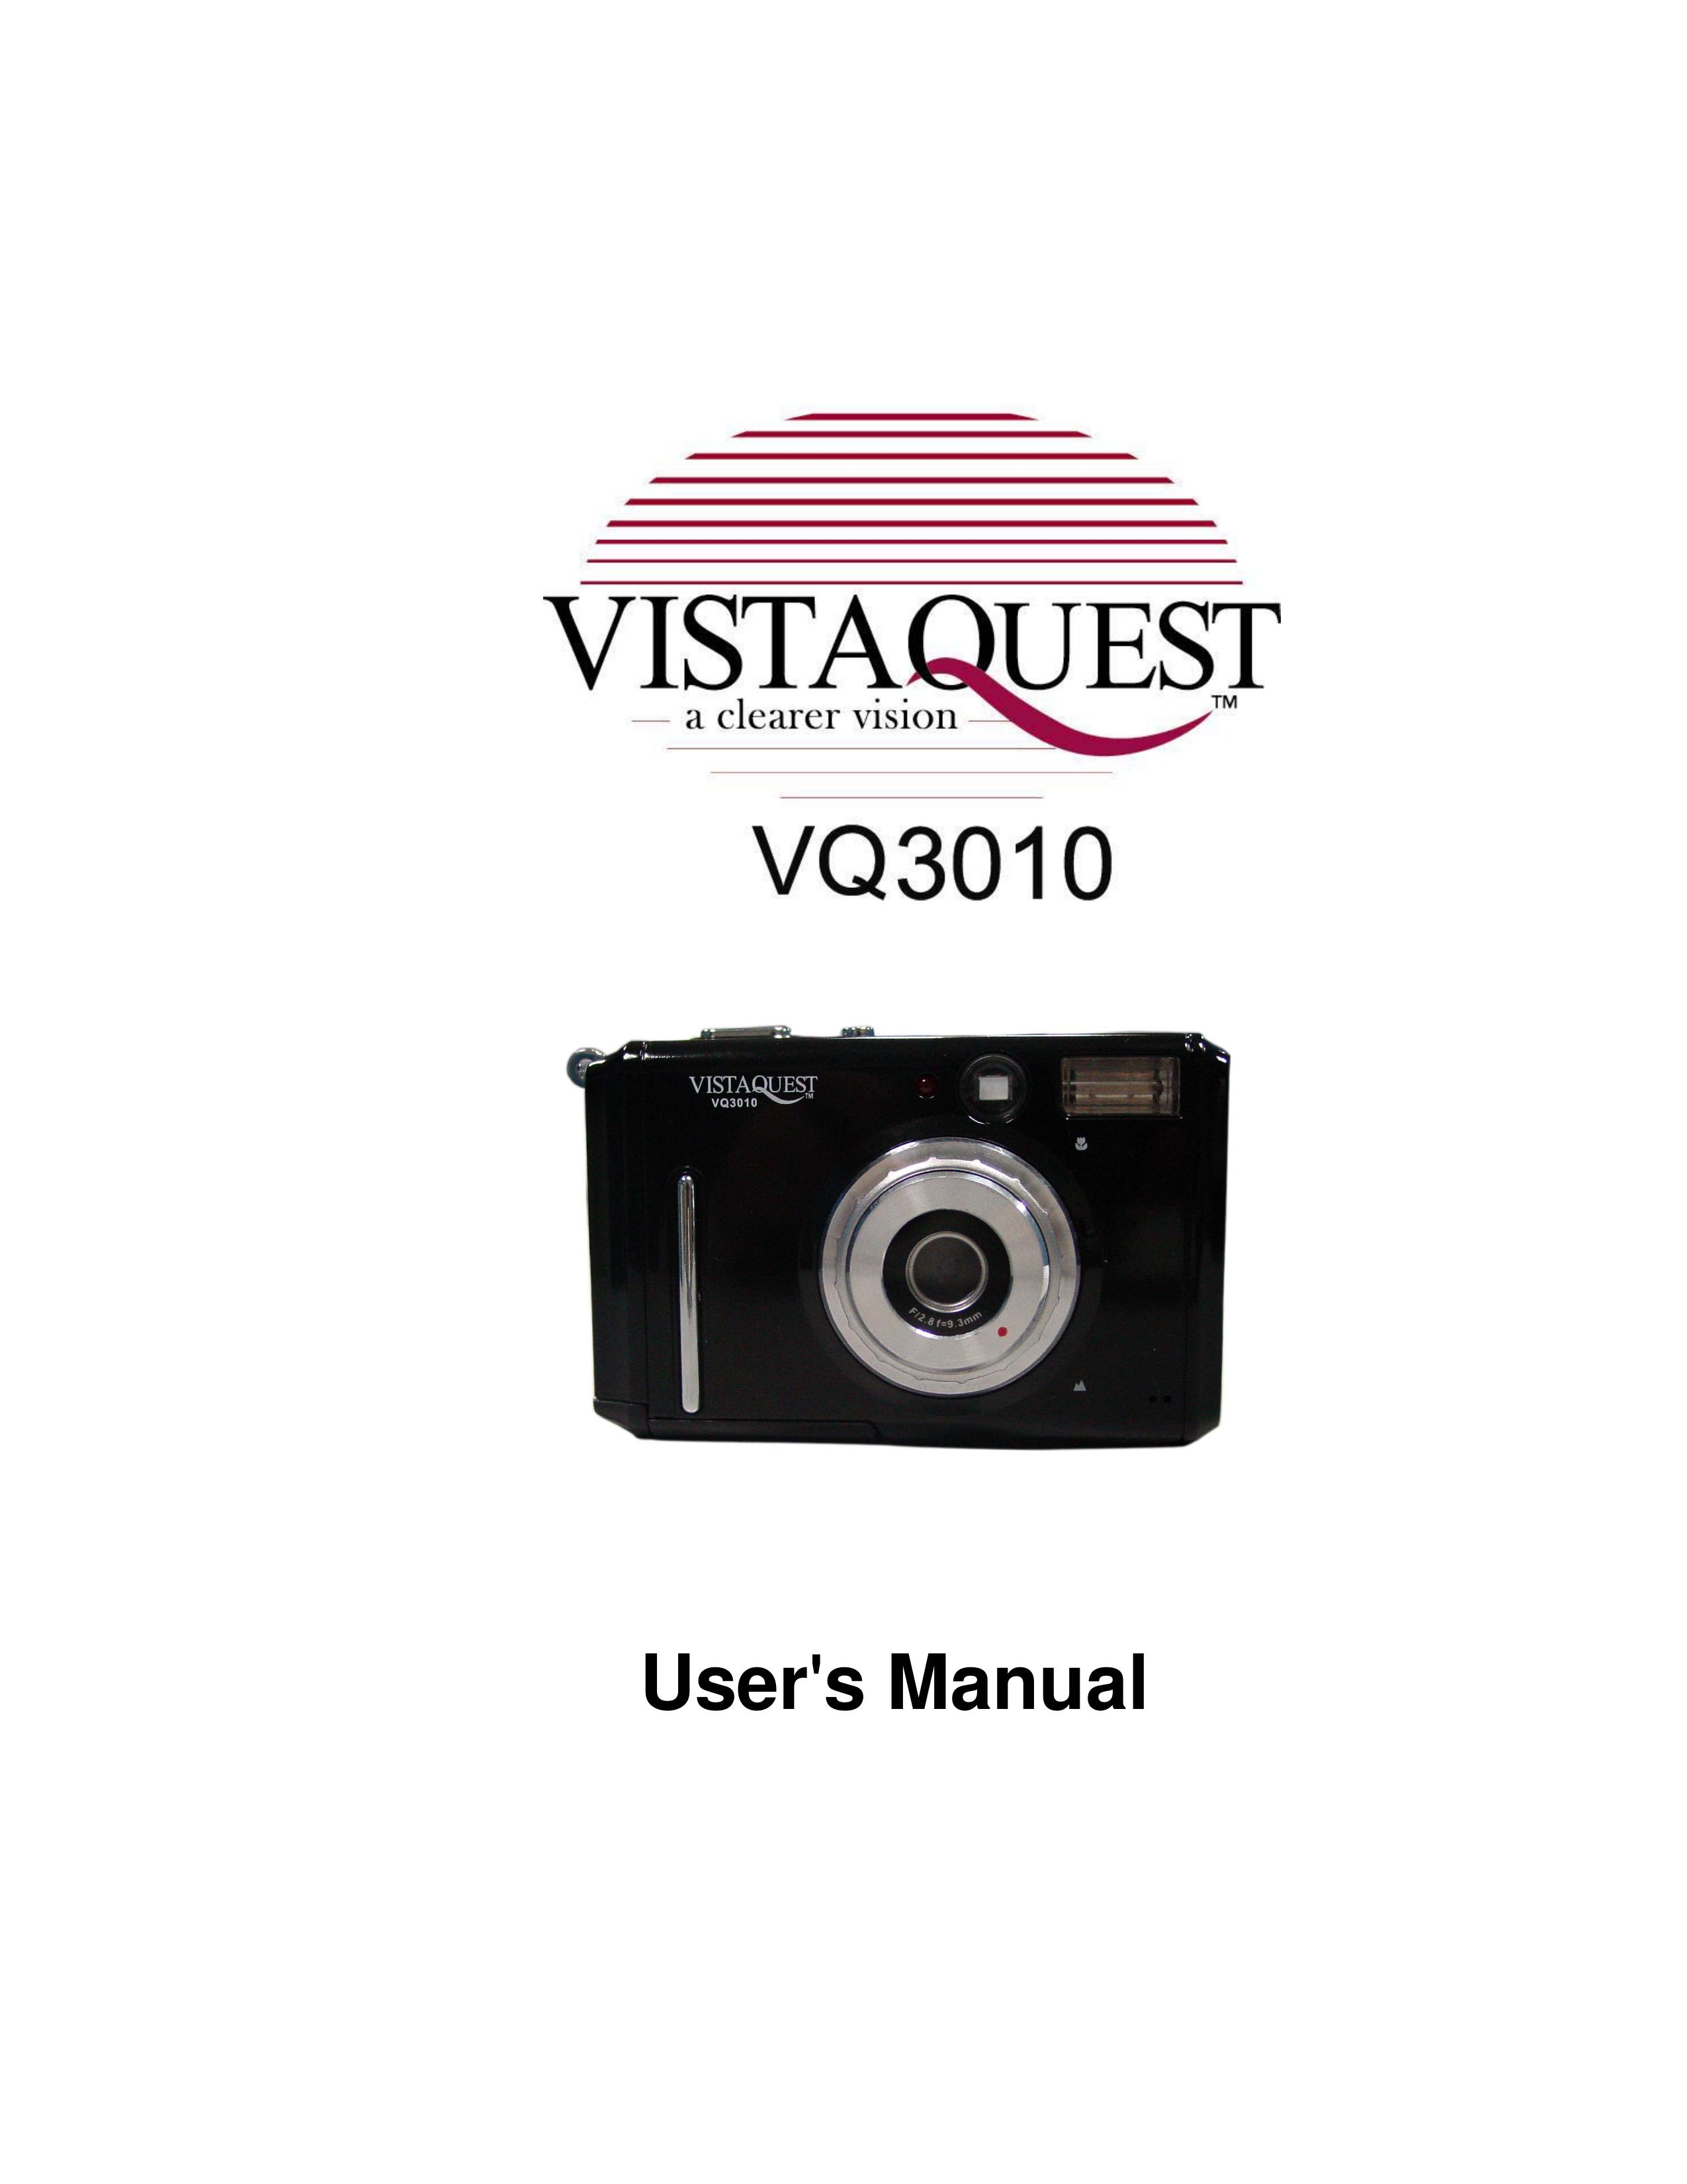 VistaQuest VQ3010 Digital Camera User Manual